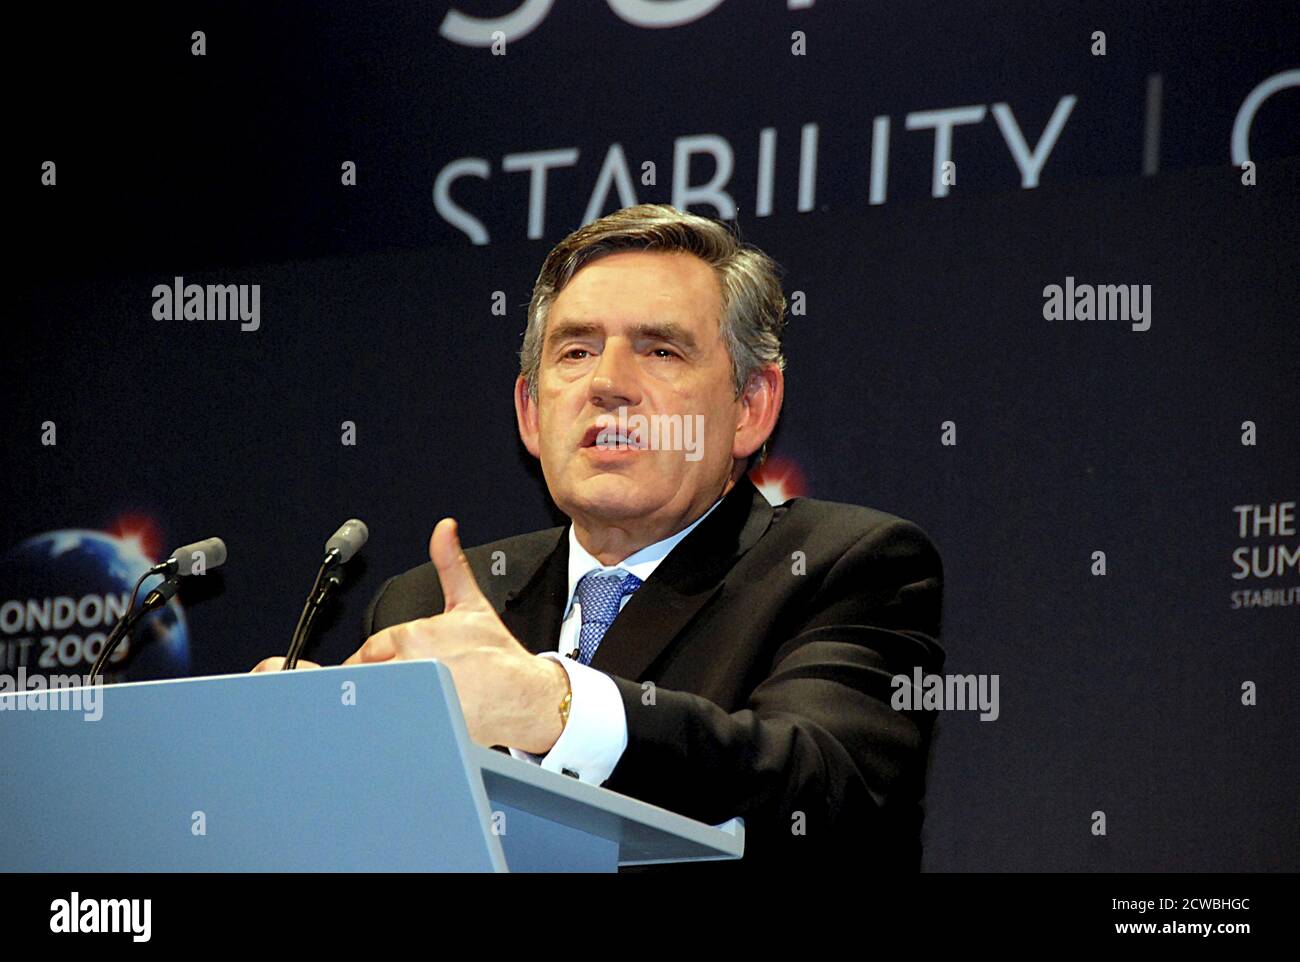 Foto von Gordon Brown beim G20-Gipfel in London 2009. James Gordon Brown (1951-) ein britischer Politiker, der von 2007 bis 2010 Premierminister des Vereinigten Königreichs und Vorsitzender der Labour Party war Stockfoto